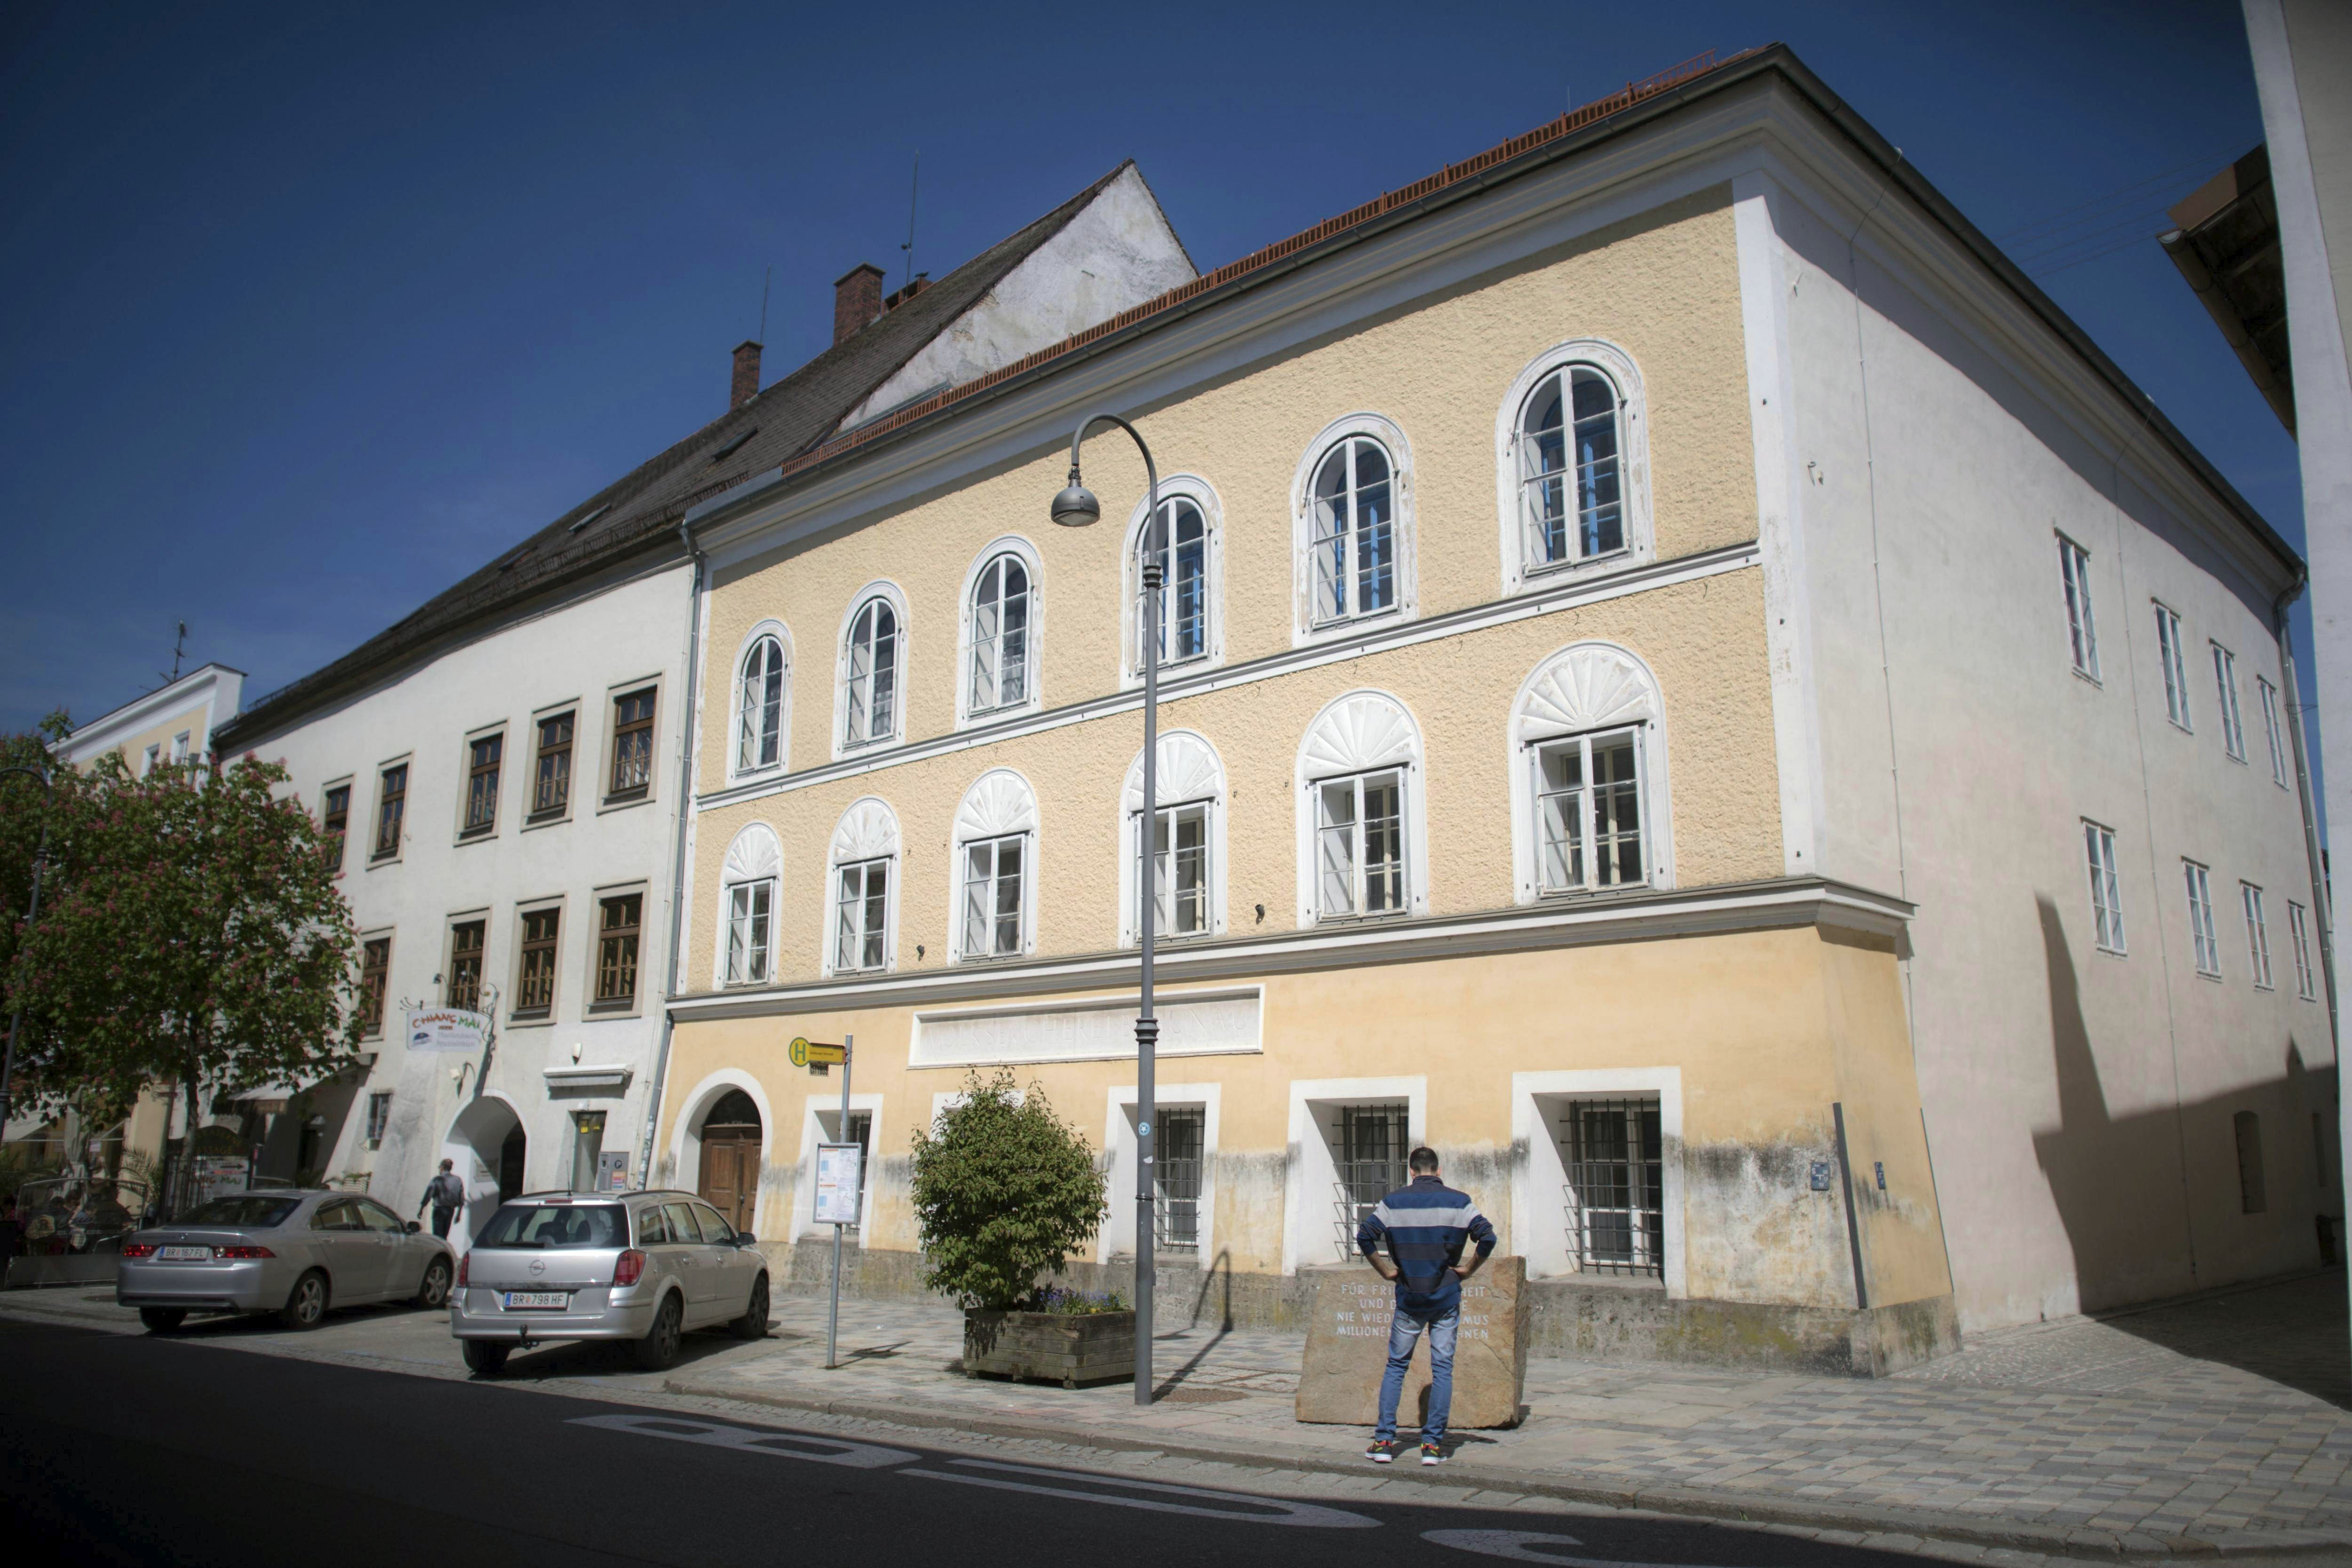 La Justicia austriaca autoriza la compra forzosa de la casa donde nació Hitler para evitar la apología nazi